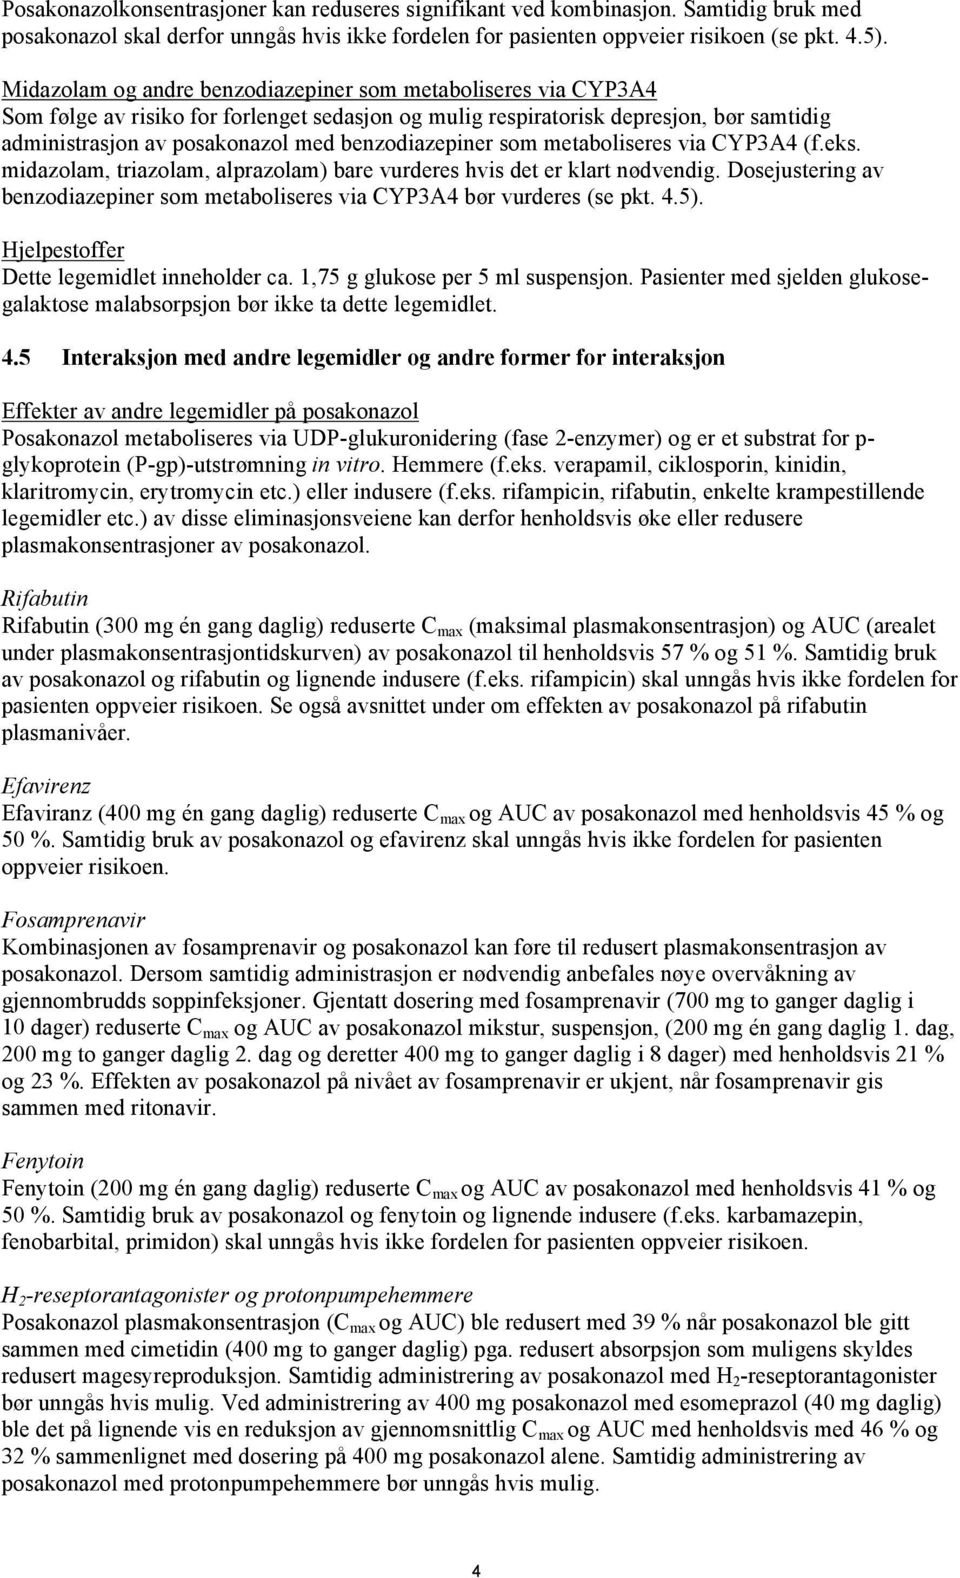 benzodiazepiner som metaboliseres via CYP3A4 (f.eks. midazolam, triazolam, alprazolam) bare vurderes hvis det er klart nødvendig.